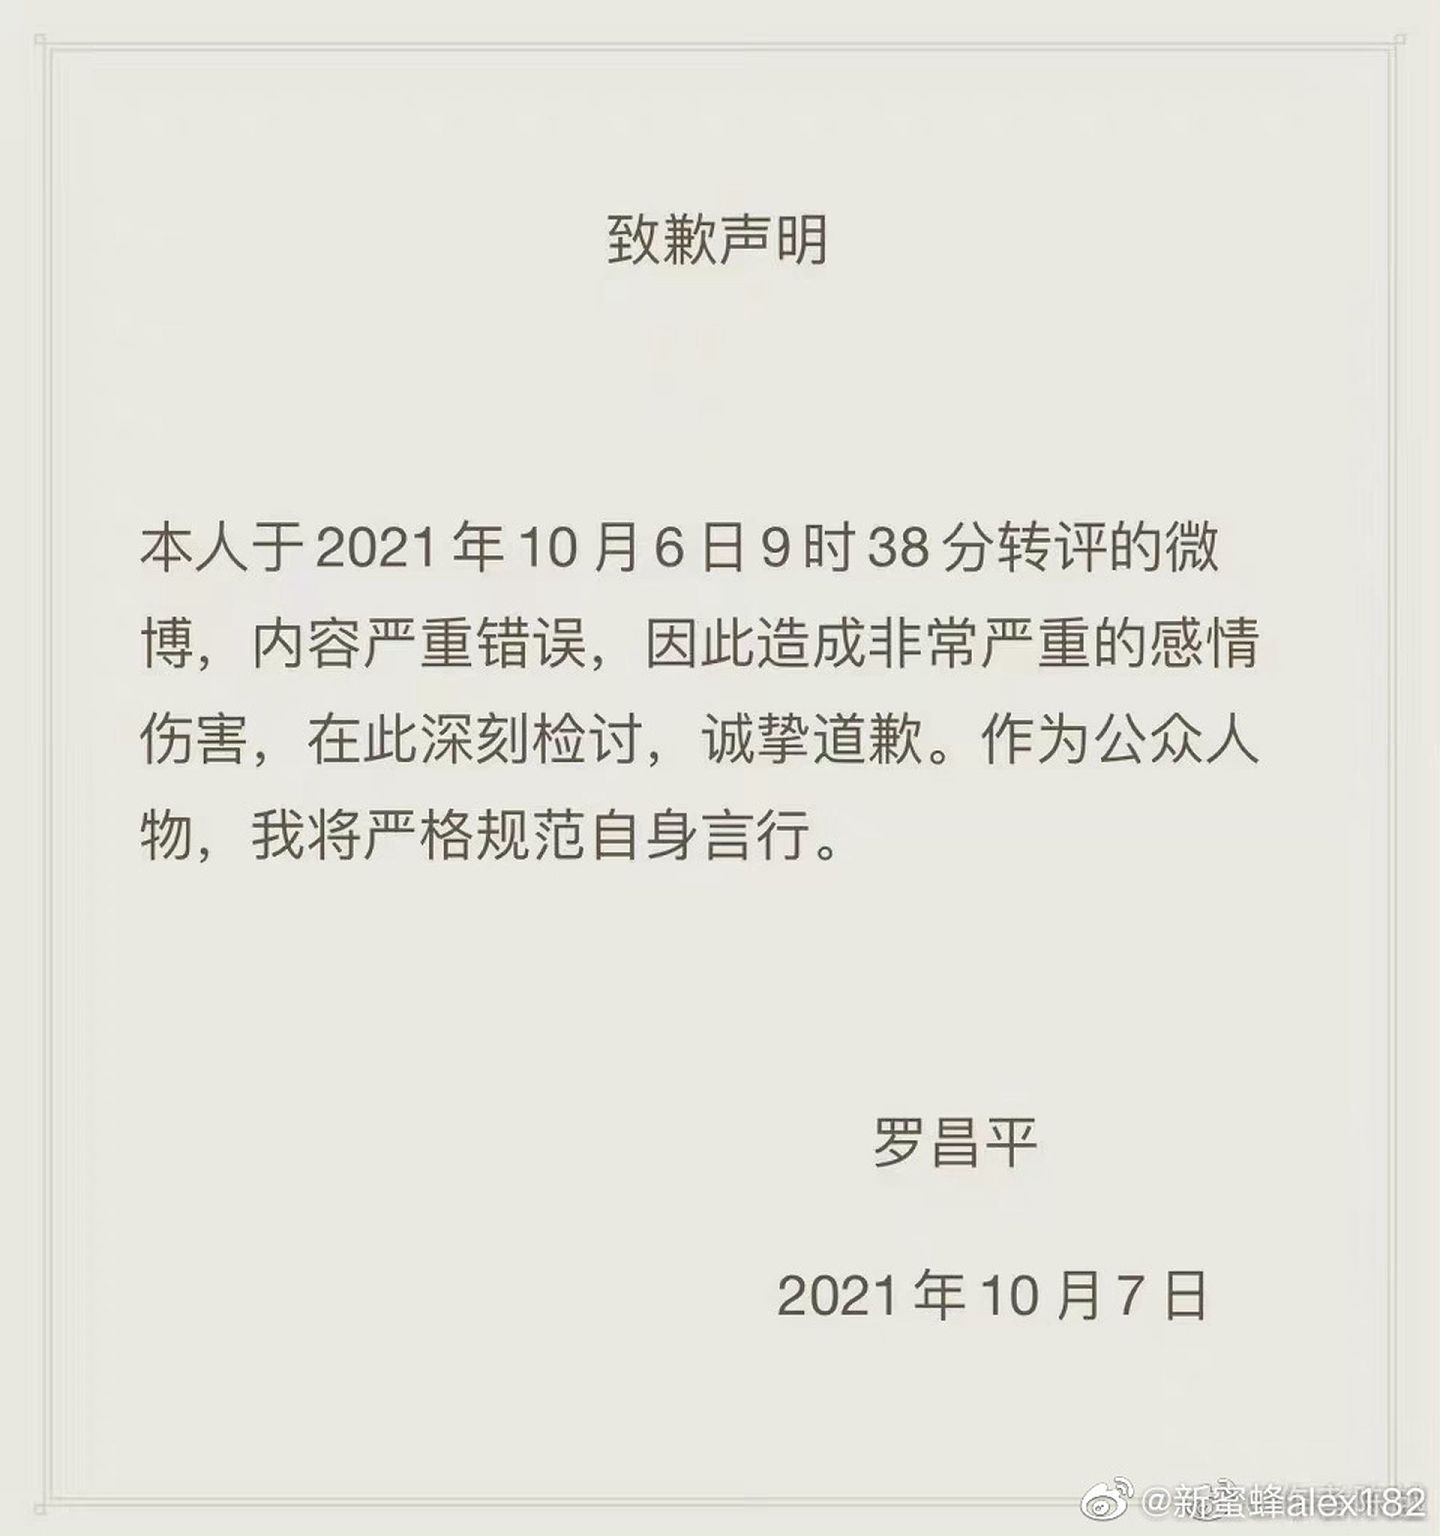 网传罗昌平的致歉声明。（微博@新蜜蜂alex182）